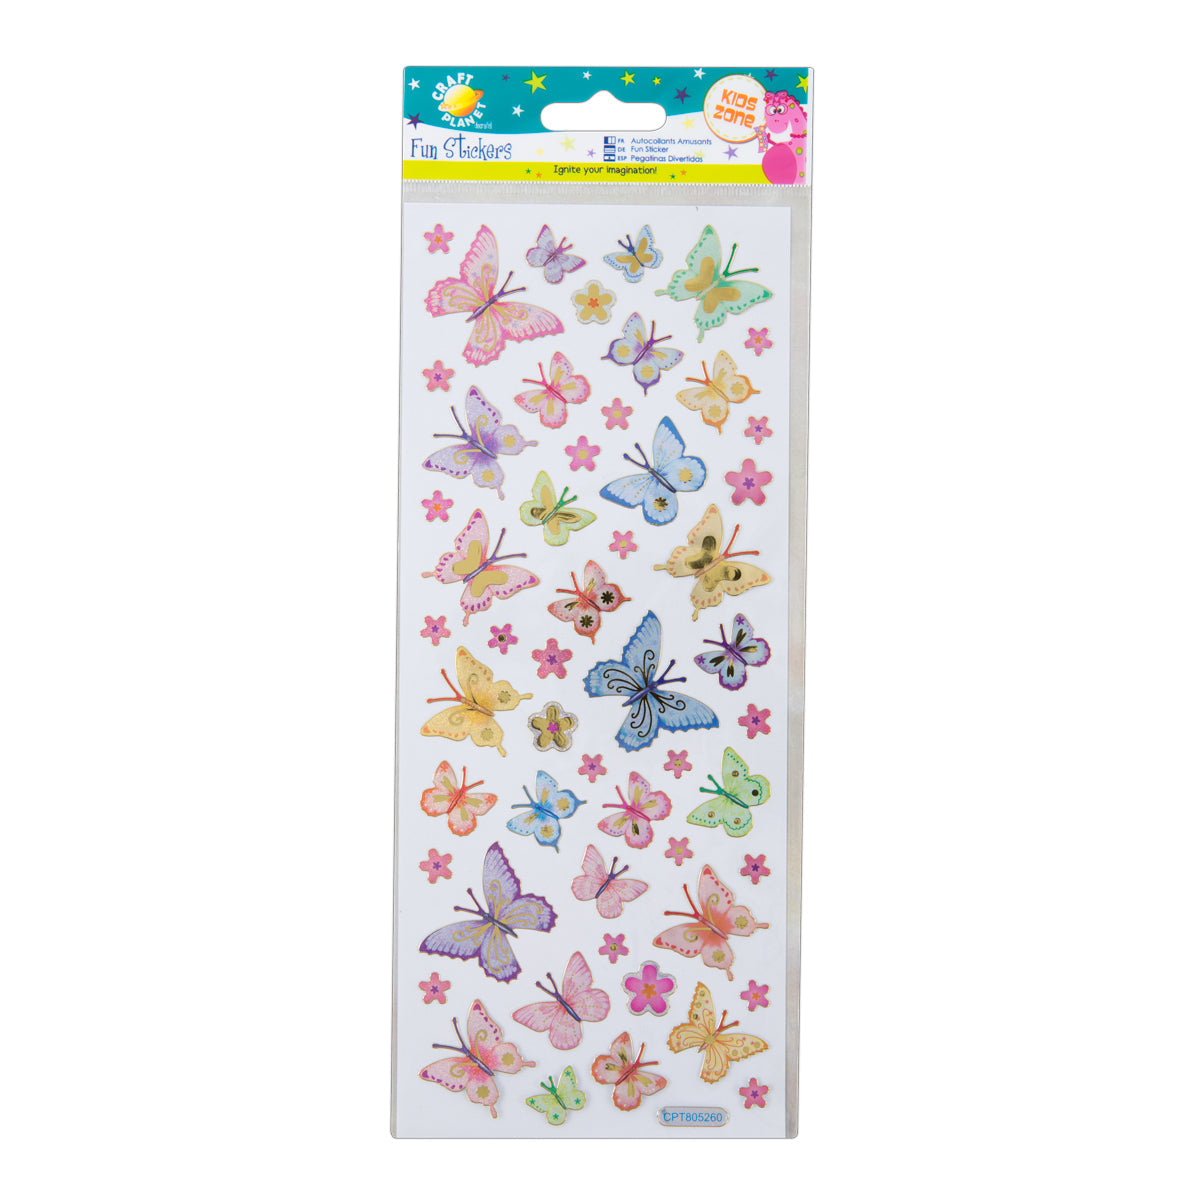 Craft Planet Fun Stickers - Butterflies & Flowers